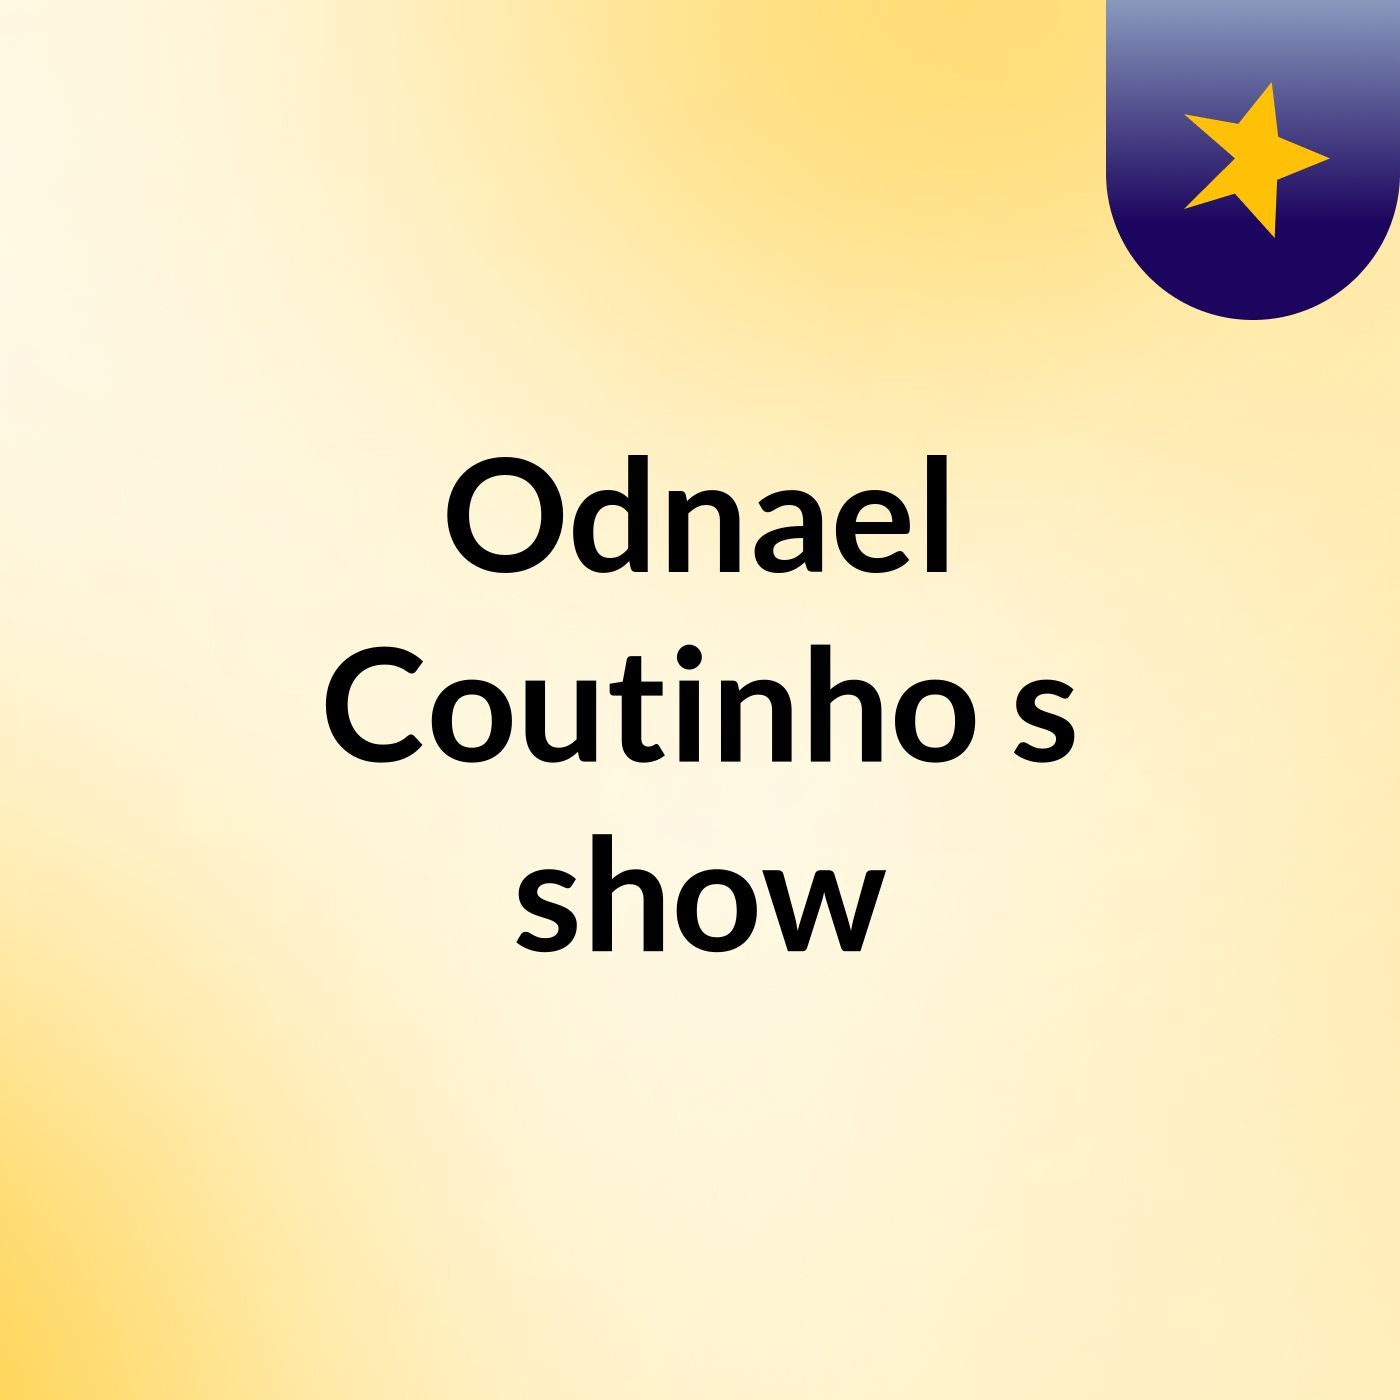 Odnael Coutinho's show